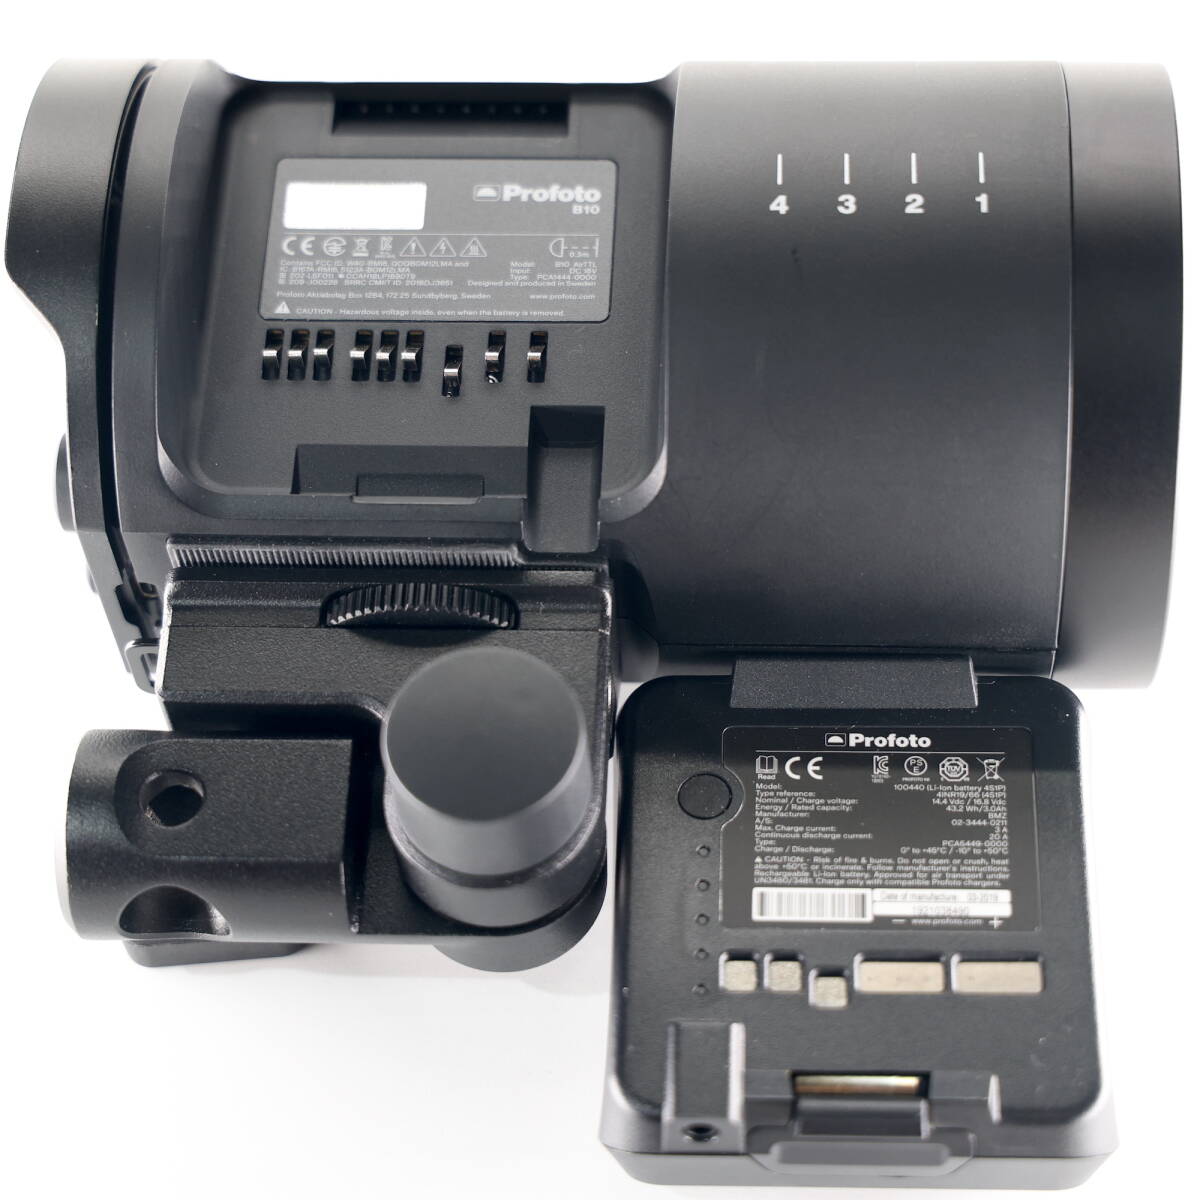 Profoto B10 Pro фото стробоскоп моно свет клейкая пленка имеется 